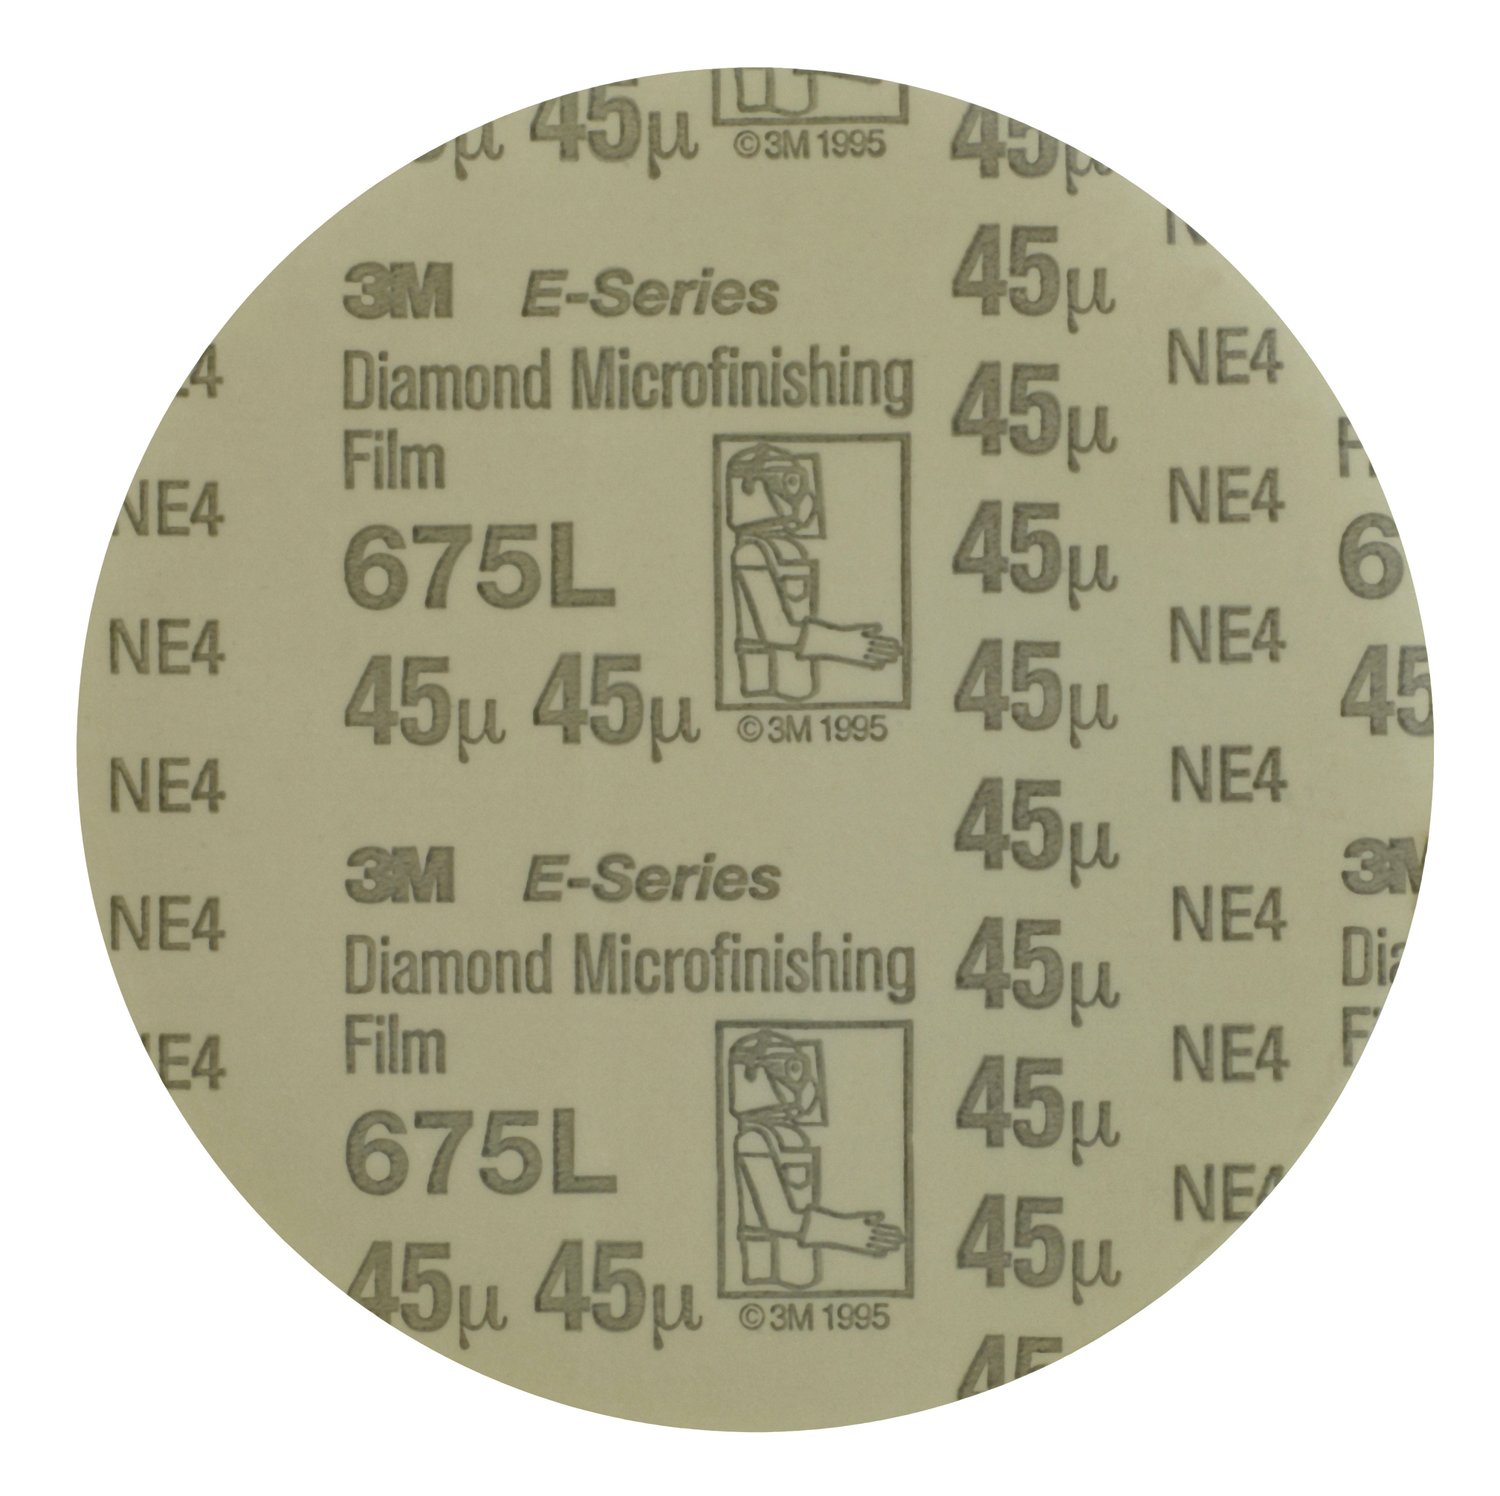 7010533349 - 3M Diamond Microfinishing Film PSA Disc 675L, 74 Mic 6MIL, Teal, 8 in x
NH, Die 800L